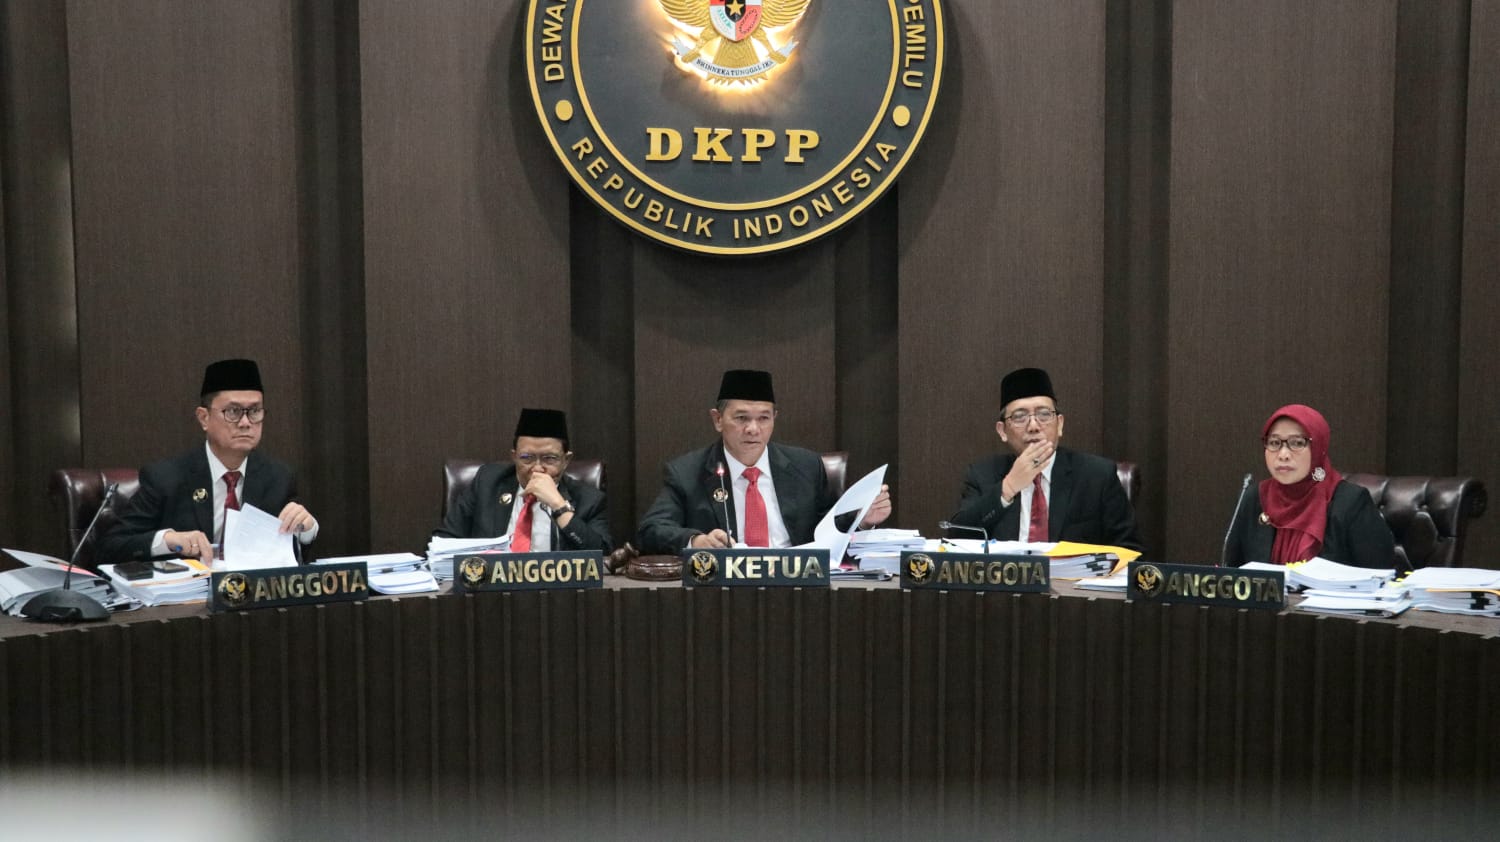 Putusan DKPP: Ketua dan Anggota KPU Terbukti Langgar Kode Etik, Ini Sanksinya